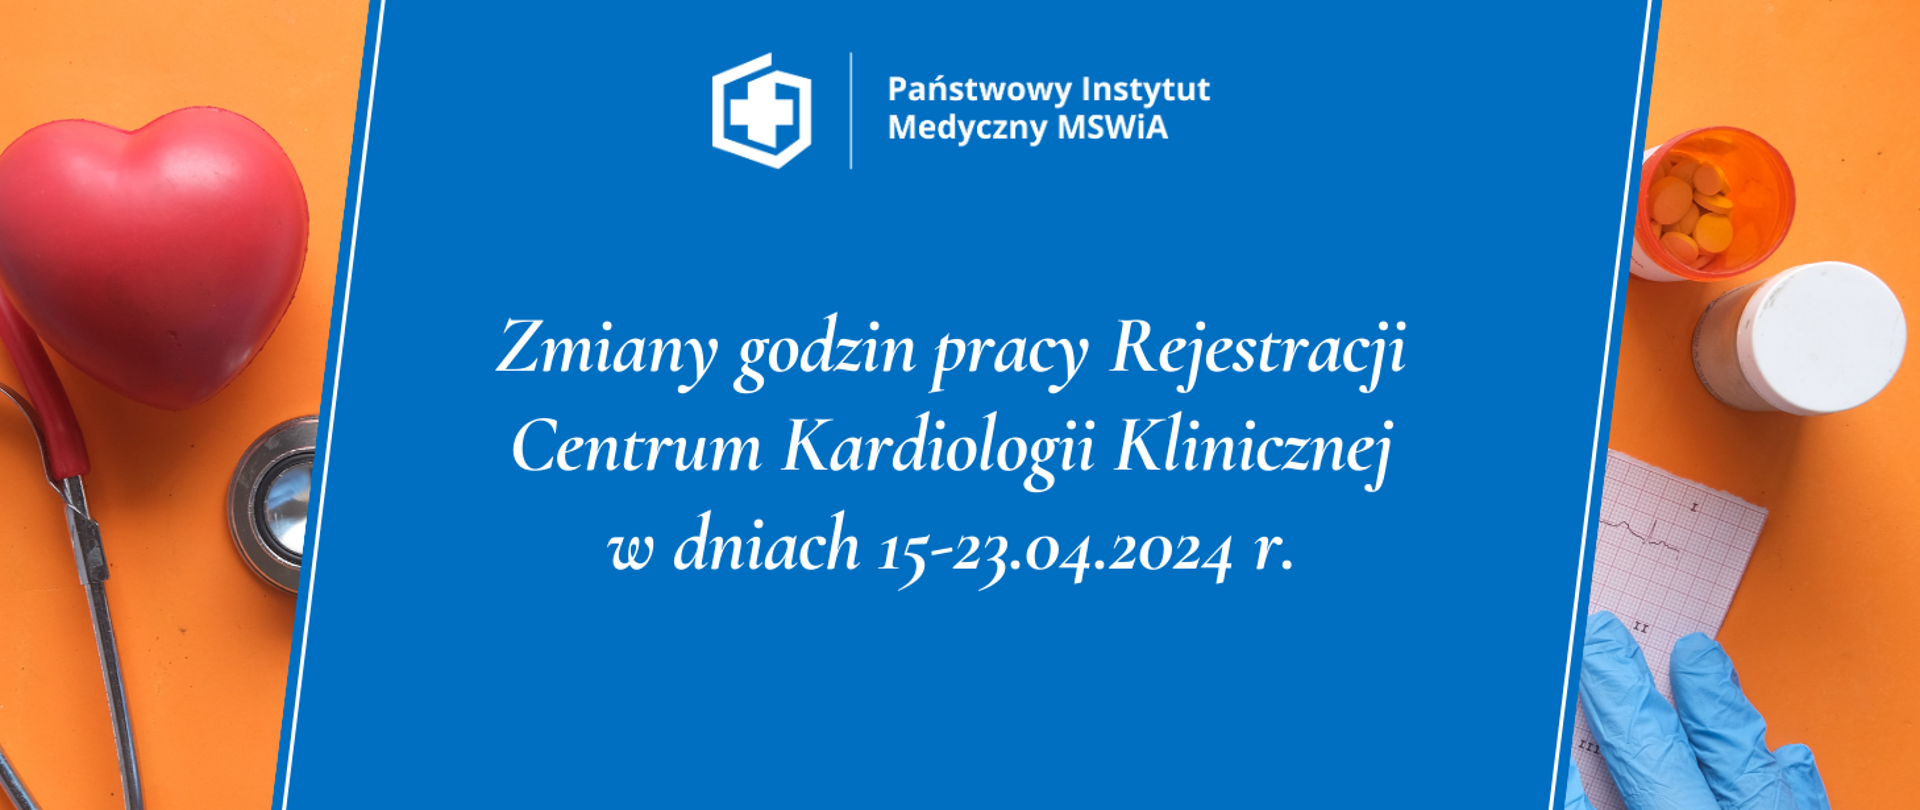 Szanowni Państwo, informujemy, że w dniach 15.04.2024-23.04.2024 rejestracja Centrum Kardiologii Klinicznej będzie czynna w godzinach 07:00-14:30. Jednocześnie przypominamy, że na wizyty można zapisywać się poprzez maila: rejestracjackk@cskmswia.gov.pl